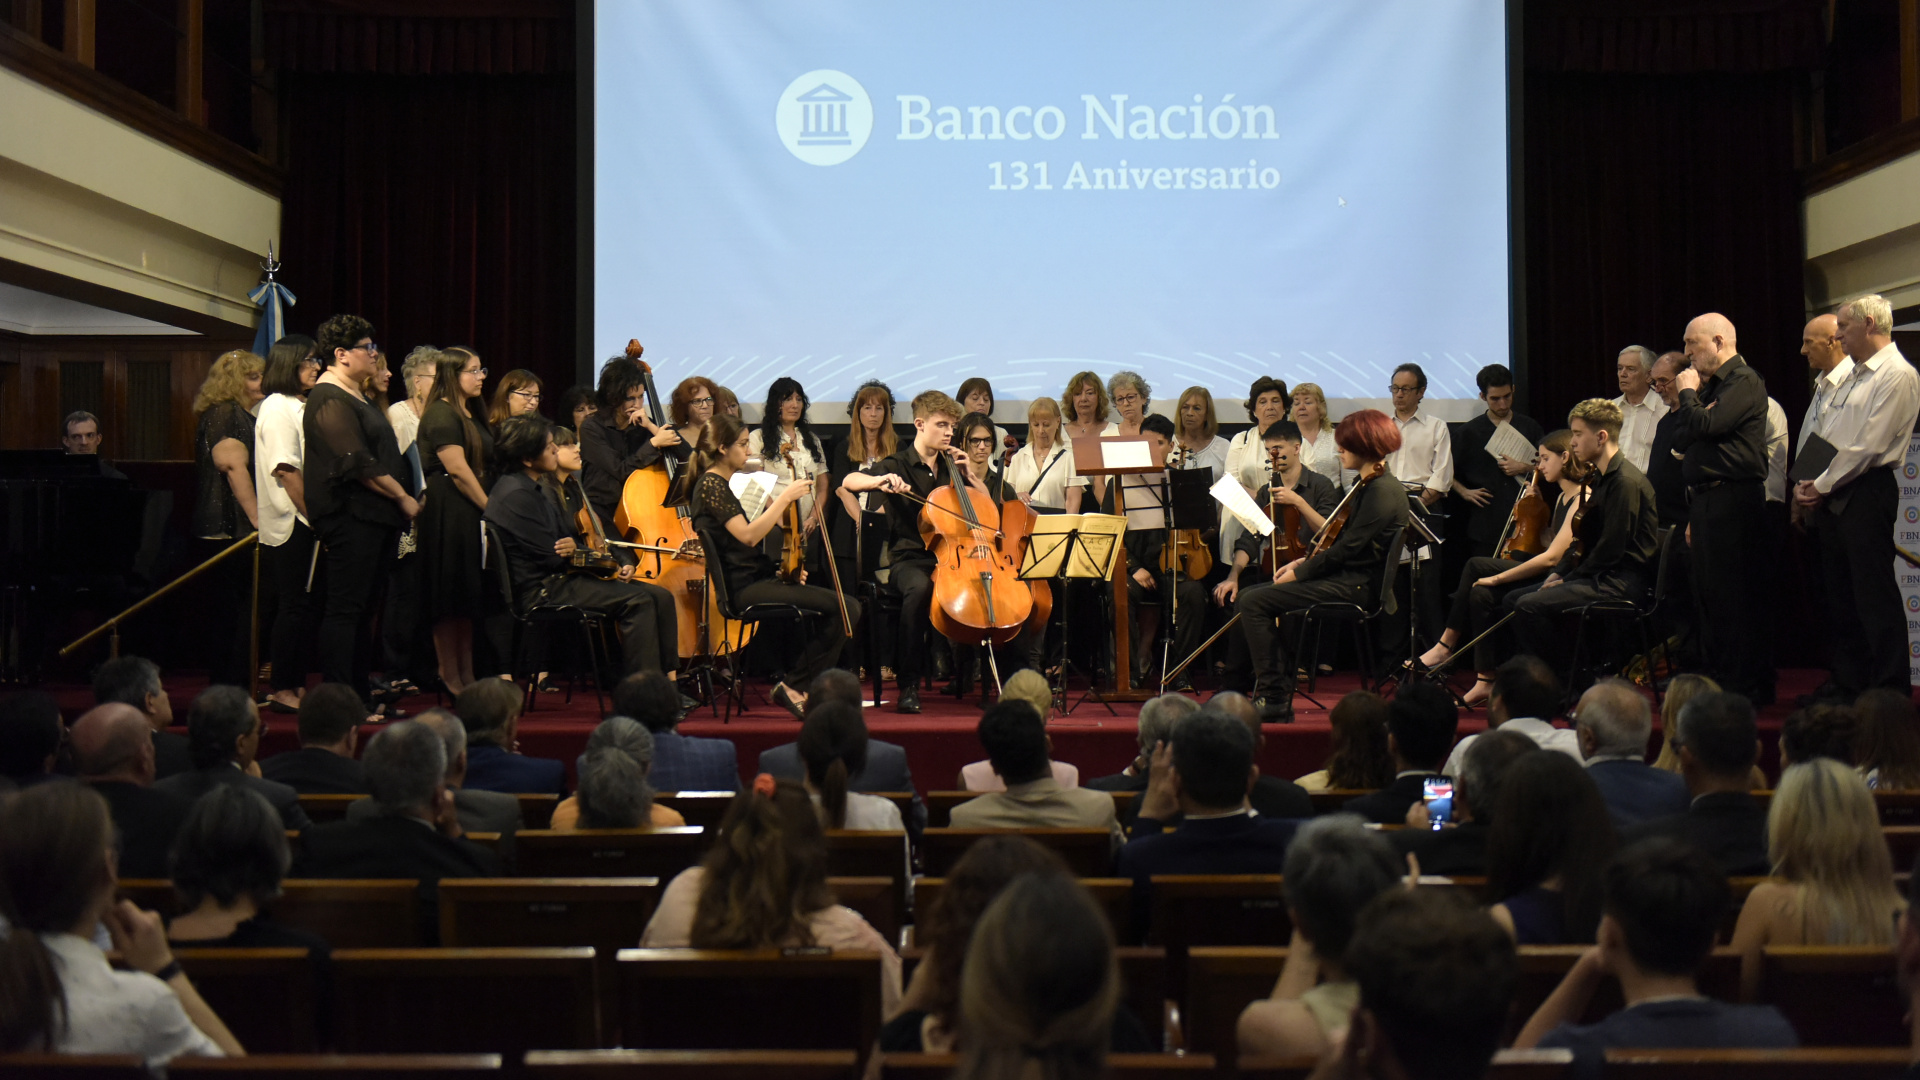 El ensamble del Coro del Banco Nación Argentina y la orquesta de la Fundación Musizap se lució en el concierto aniversario por los 41 años de la Fundación Banco Nación

 